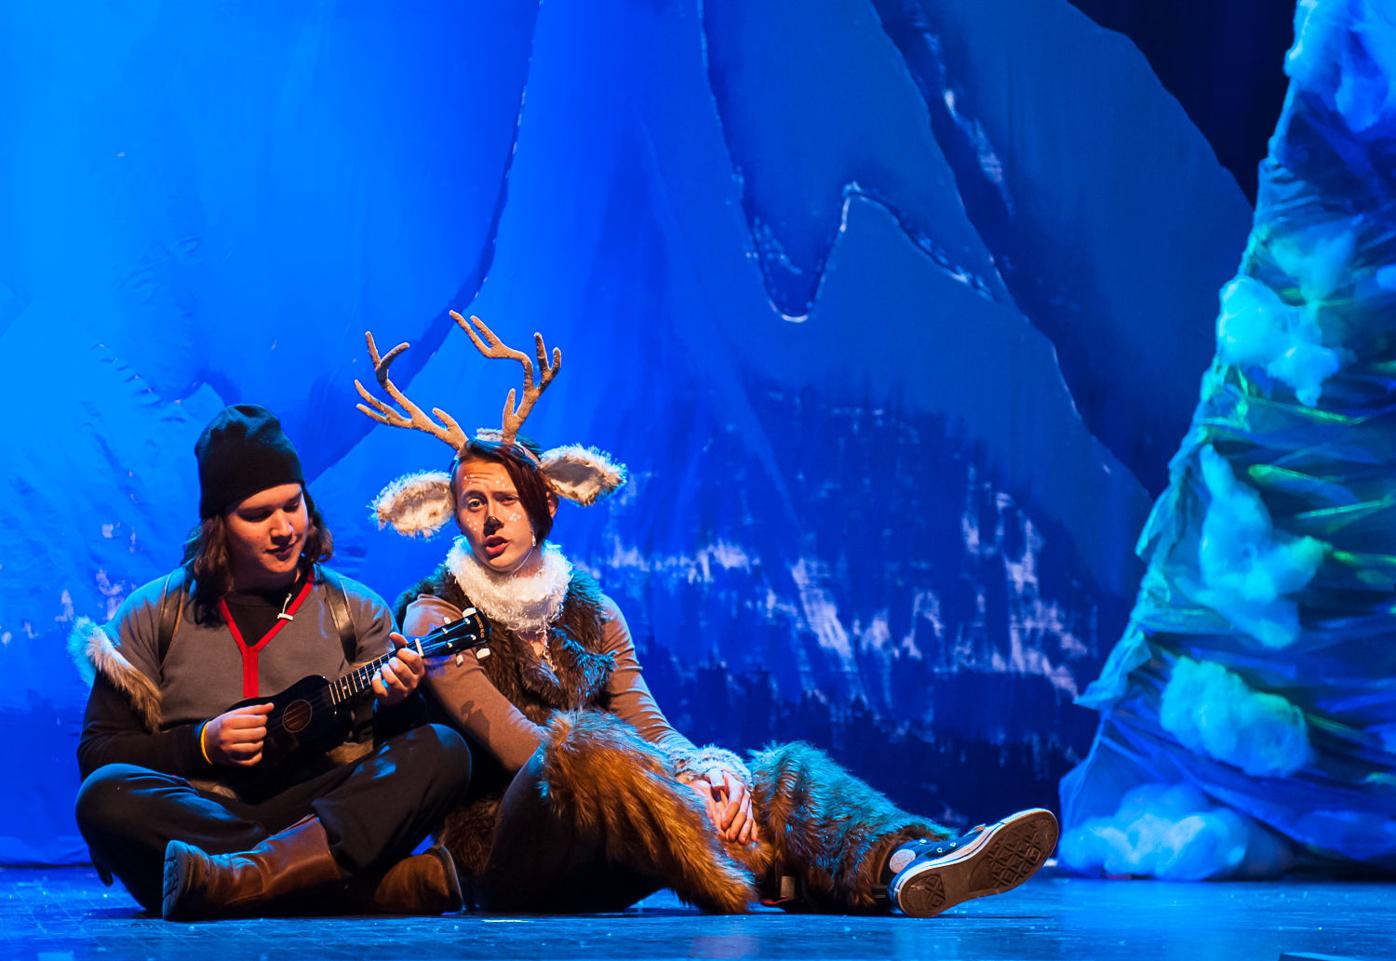 Disney's Frozen JR. - Athens Theatre